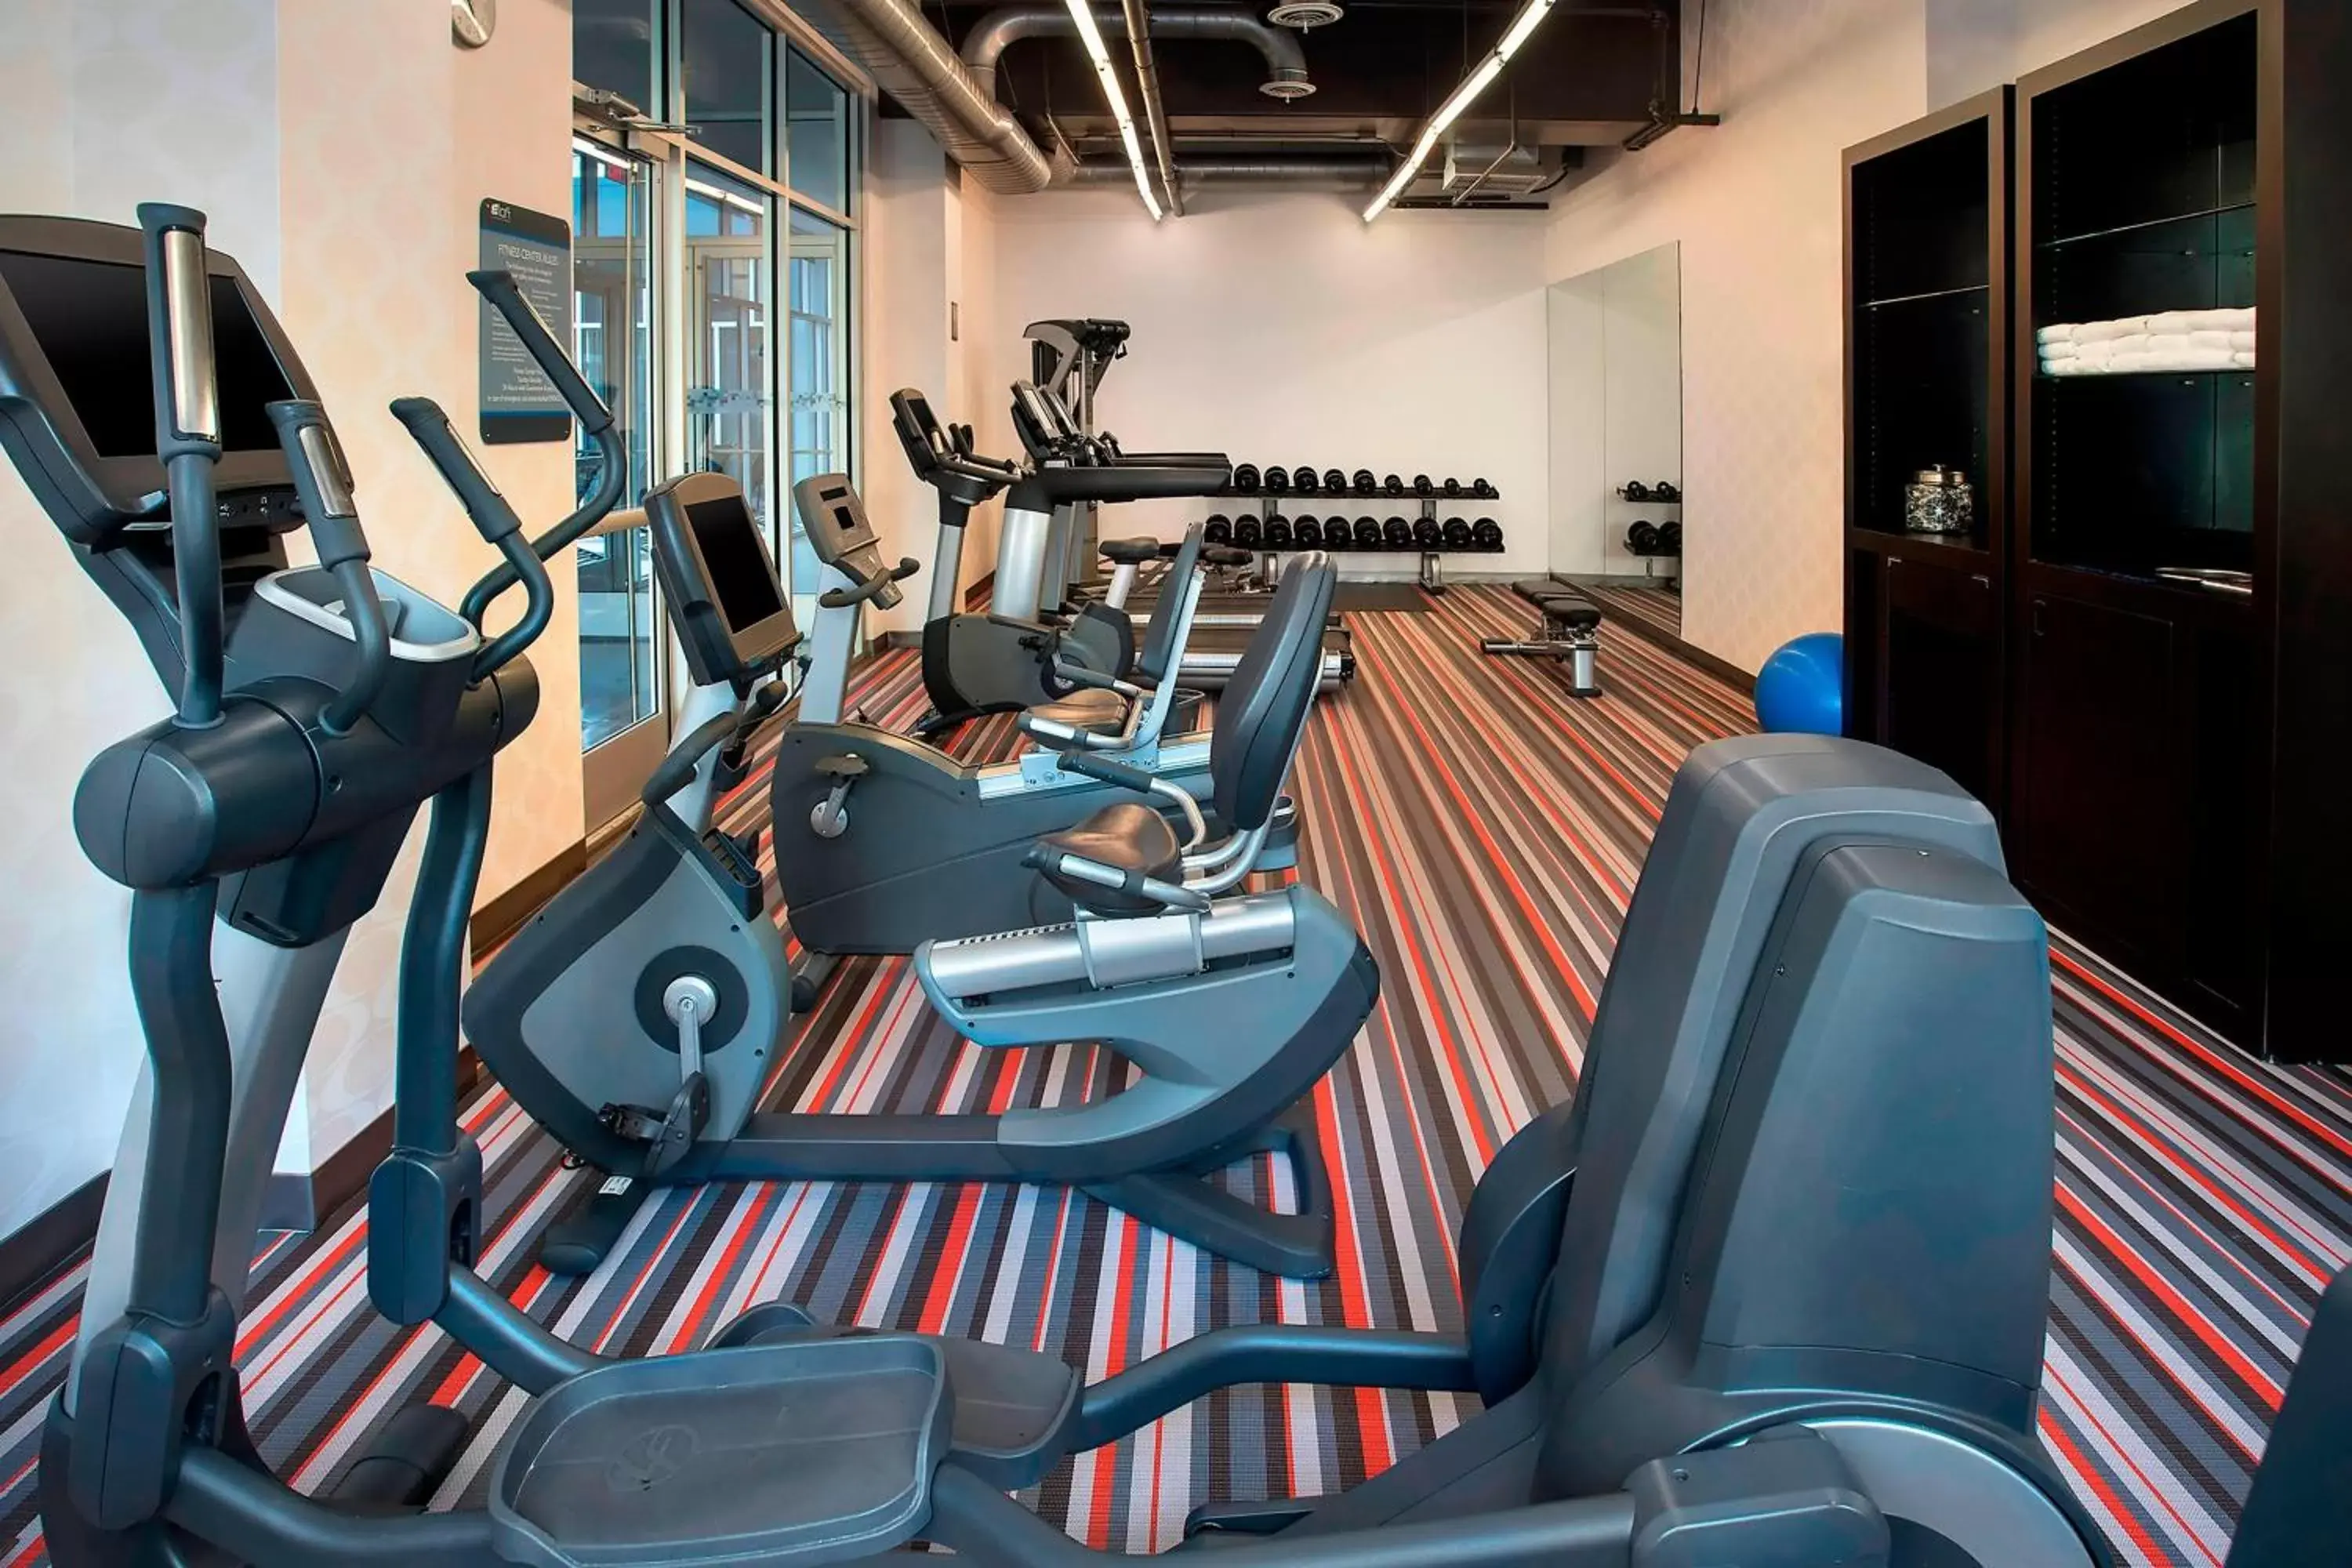 Fitness centre/facilities, Fitness Center/Facilities in Aloft Nashville Franklin